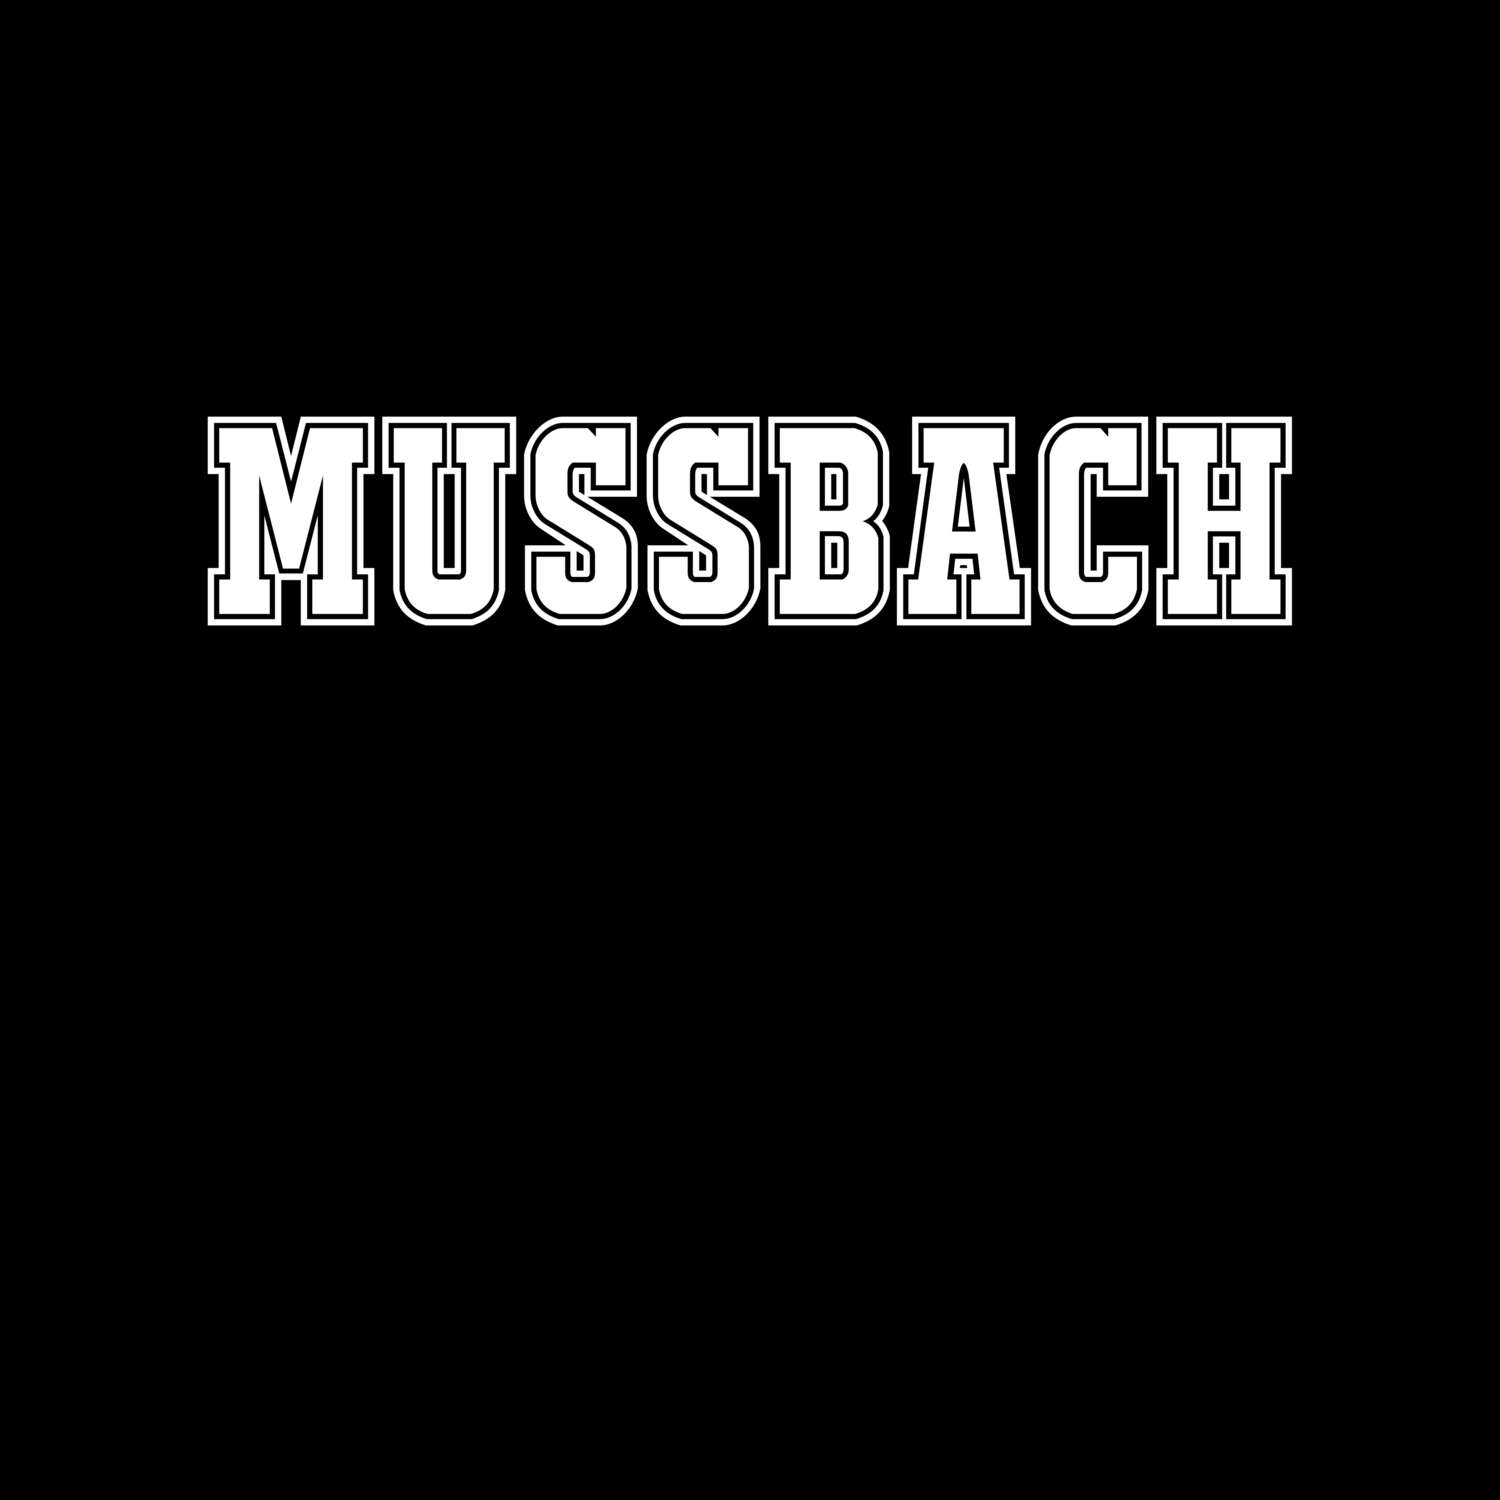 Mußbach T-Shirt »Classic«